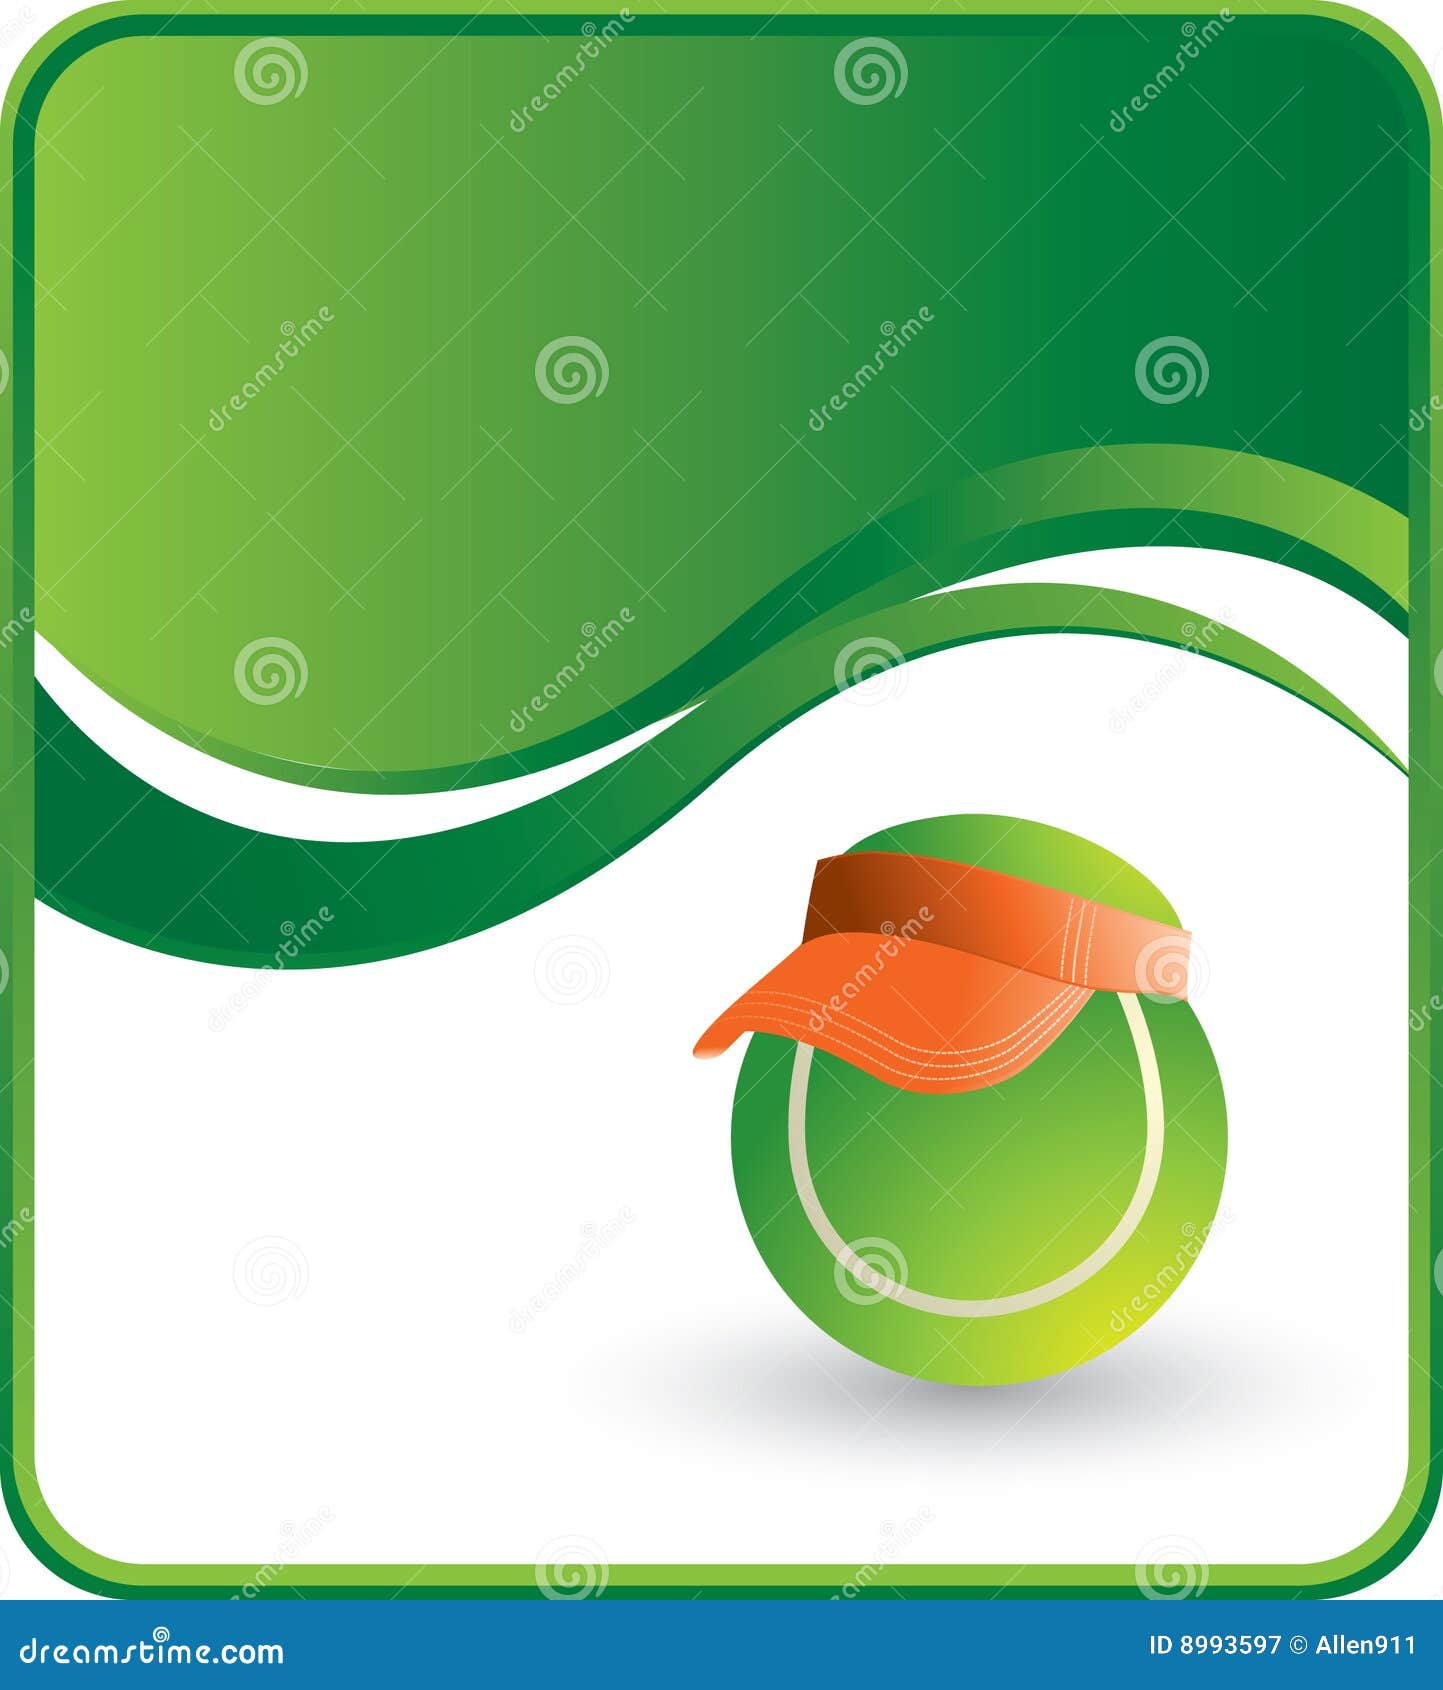 tennis ball with visor